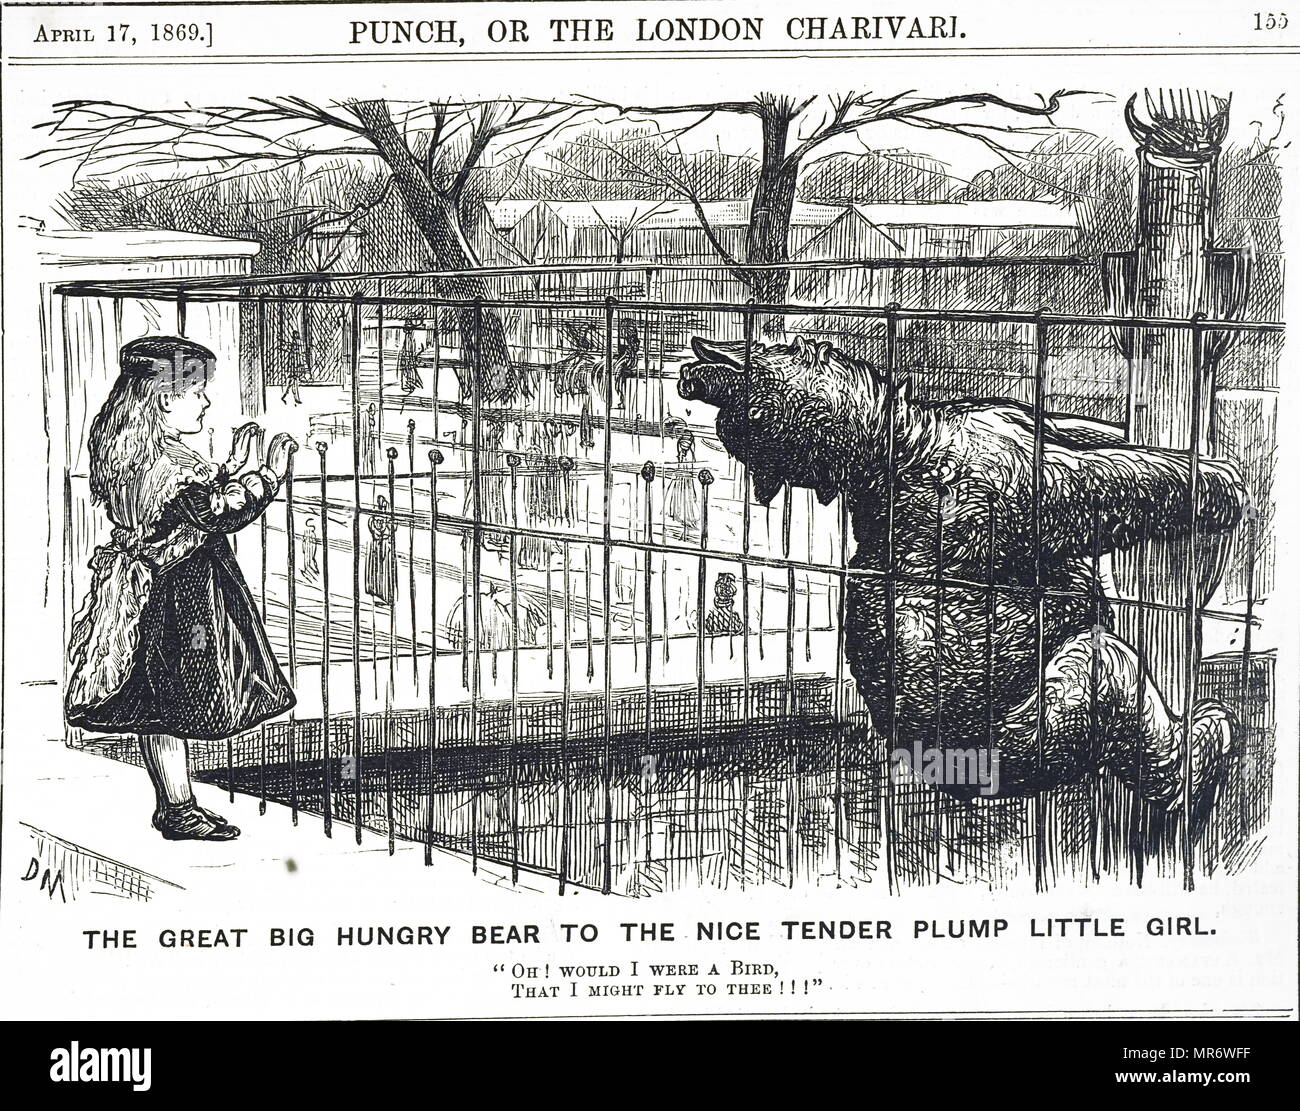 Caricature commentaires sur le bien-être des animaux au zoo de Londres. Un ours affamé désire être libéré pour qu'il puisse obtenir de la nourriture. Illustré par George du Maurier (1834-1896), un caricaturiste franco-britannique et l'auteur. En date du 19e siècle Banque D'Images